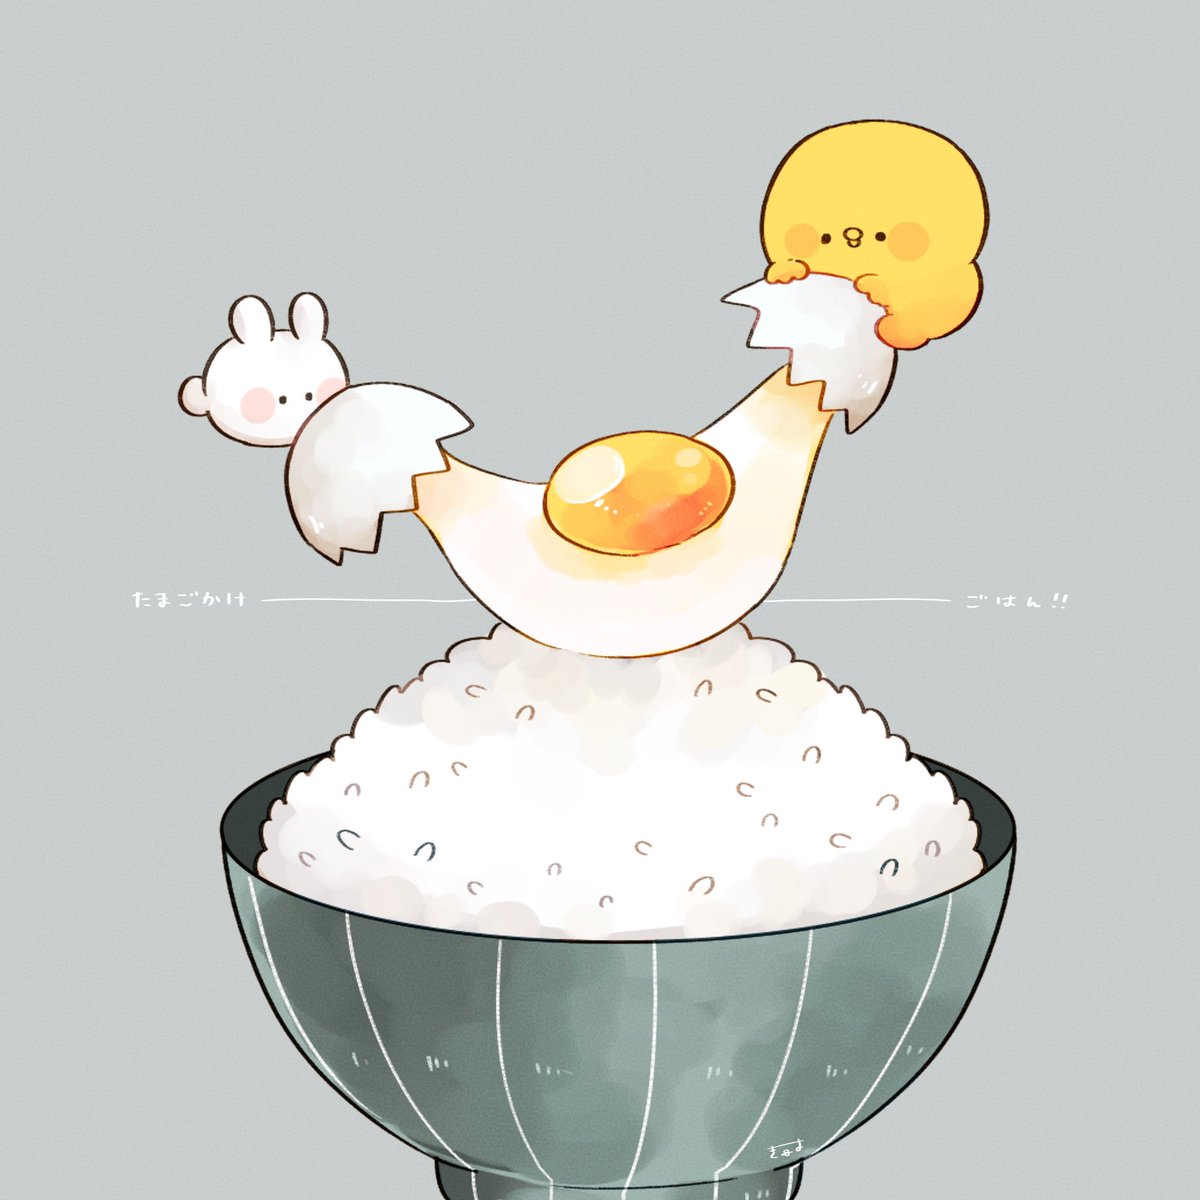 rice egg egg (food) bird food no humans chick  illustration images